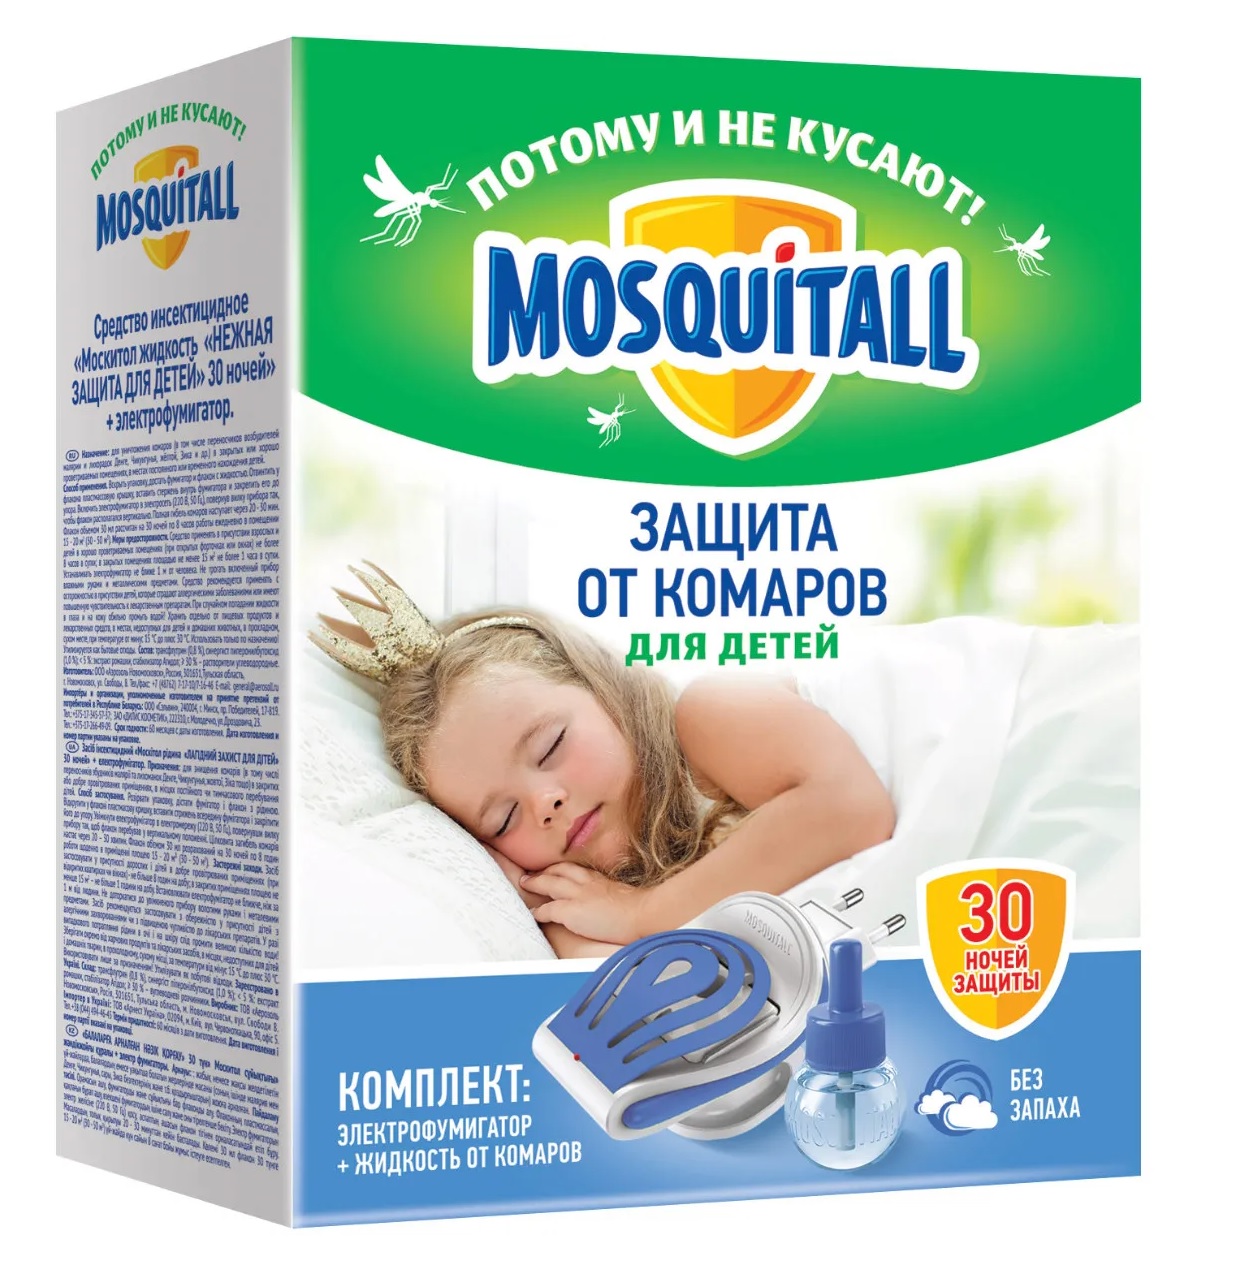 Комплект Mosquitall Нежная защита для детей: электрофумигатор + жидкость 30 ночей от комаров 30 мл mosquitall жидкость от комаров 30 ночей